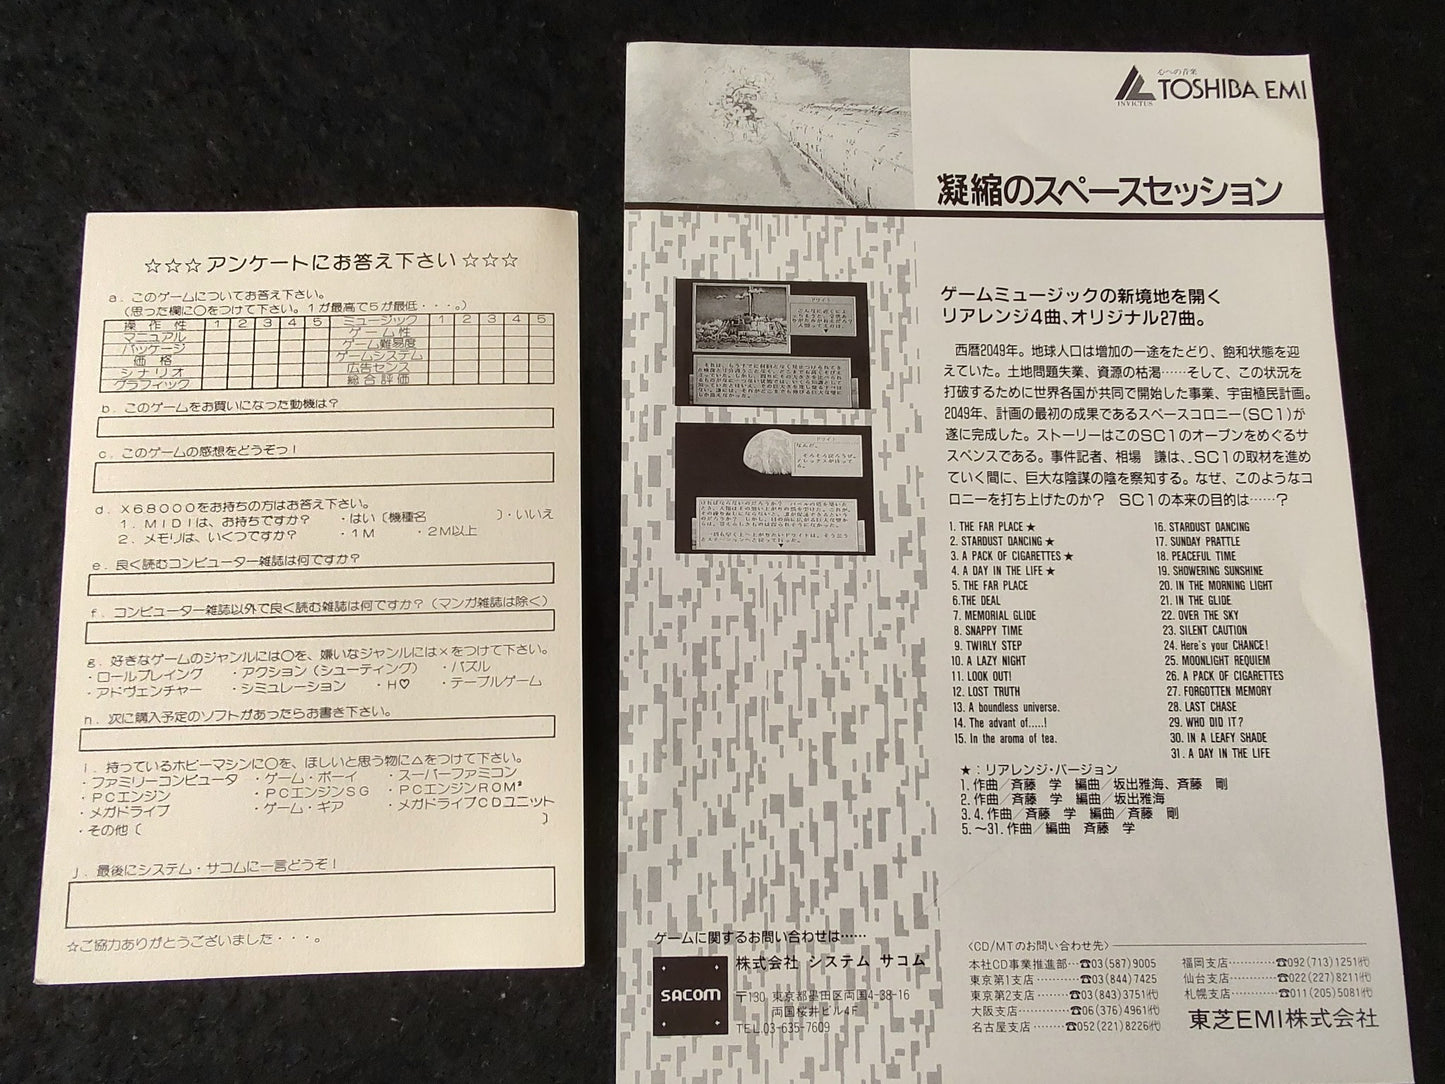 Gemini Wing TECMO SHARP X68000 Game w/Manual, and Box set, Working-f0520-